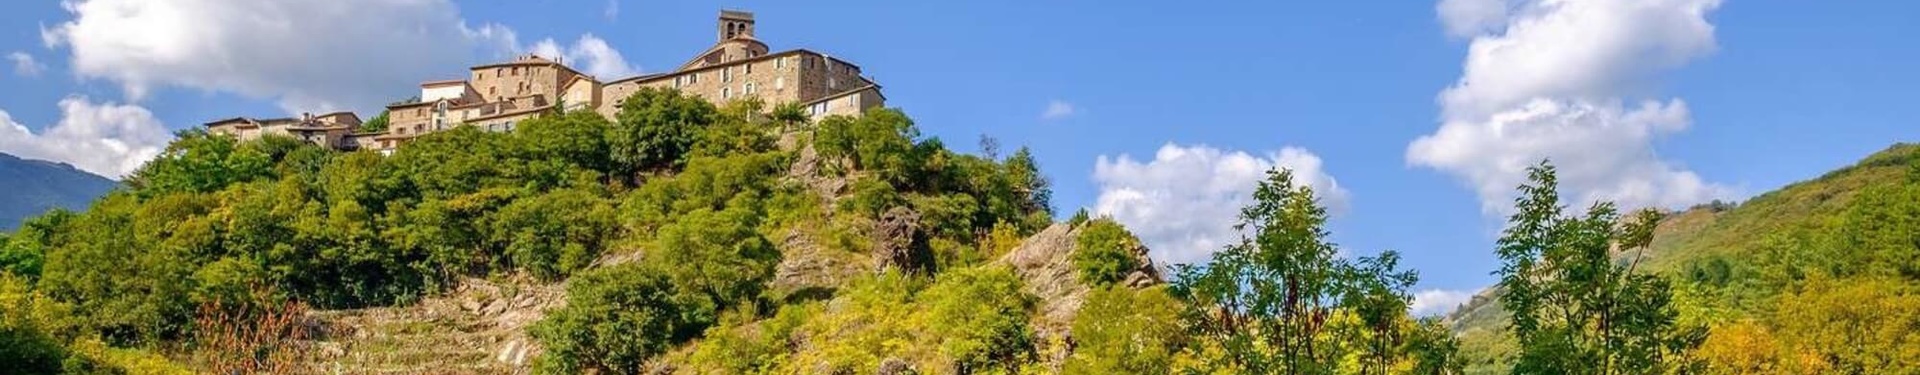 Formulaire de réservation - Ardèche aventure : séjour famille en Ardèche | Nature Occitane